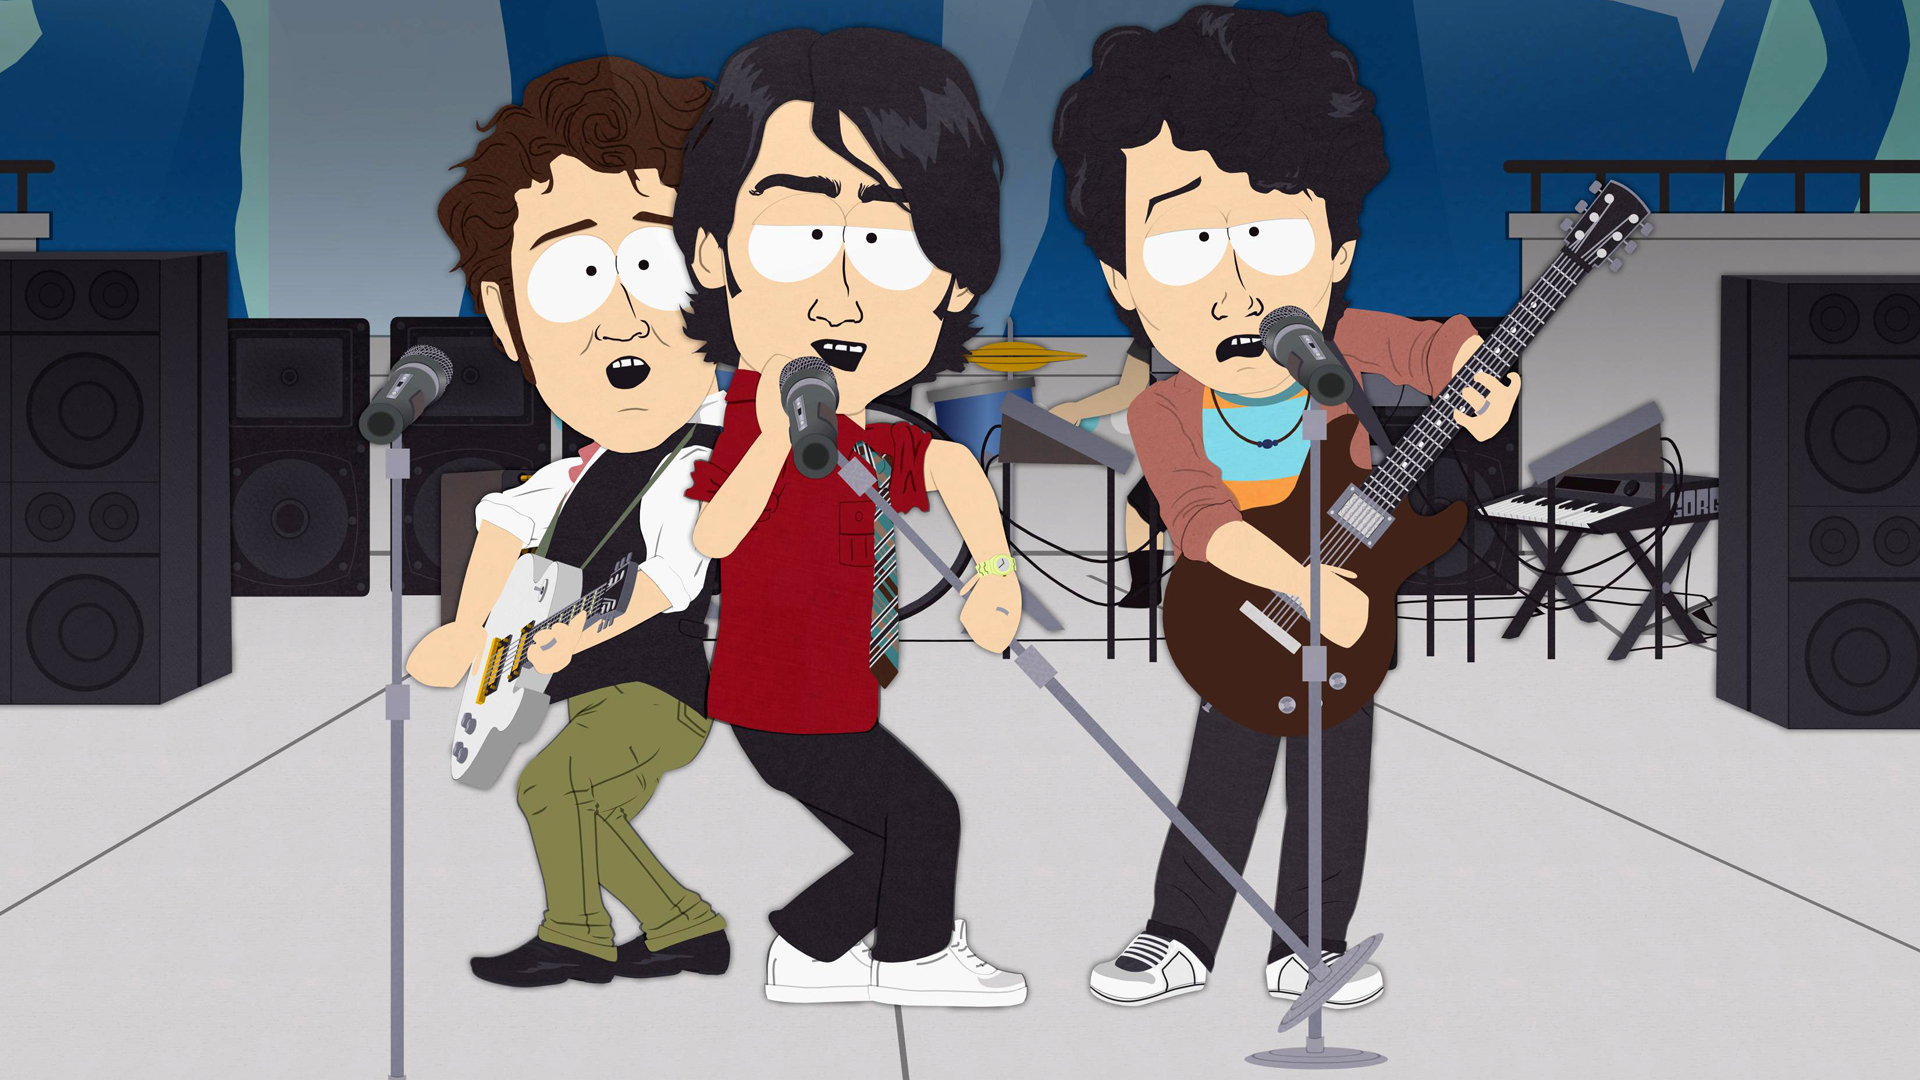 Die „Jonas Brothers“ in der Version von „South Park“. Als die Jungs sich weigern, weiterhin für Keuschheit und den Glauben zu werben, werden sie von ihrem Chef, Micky Maus, zusammengeschlagen